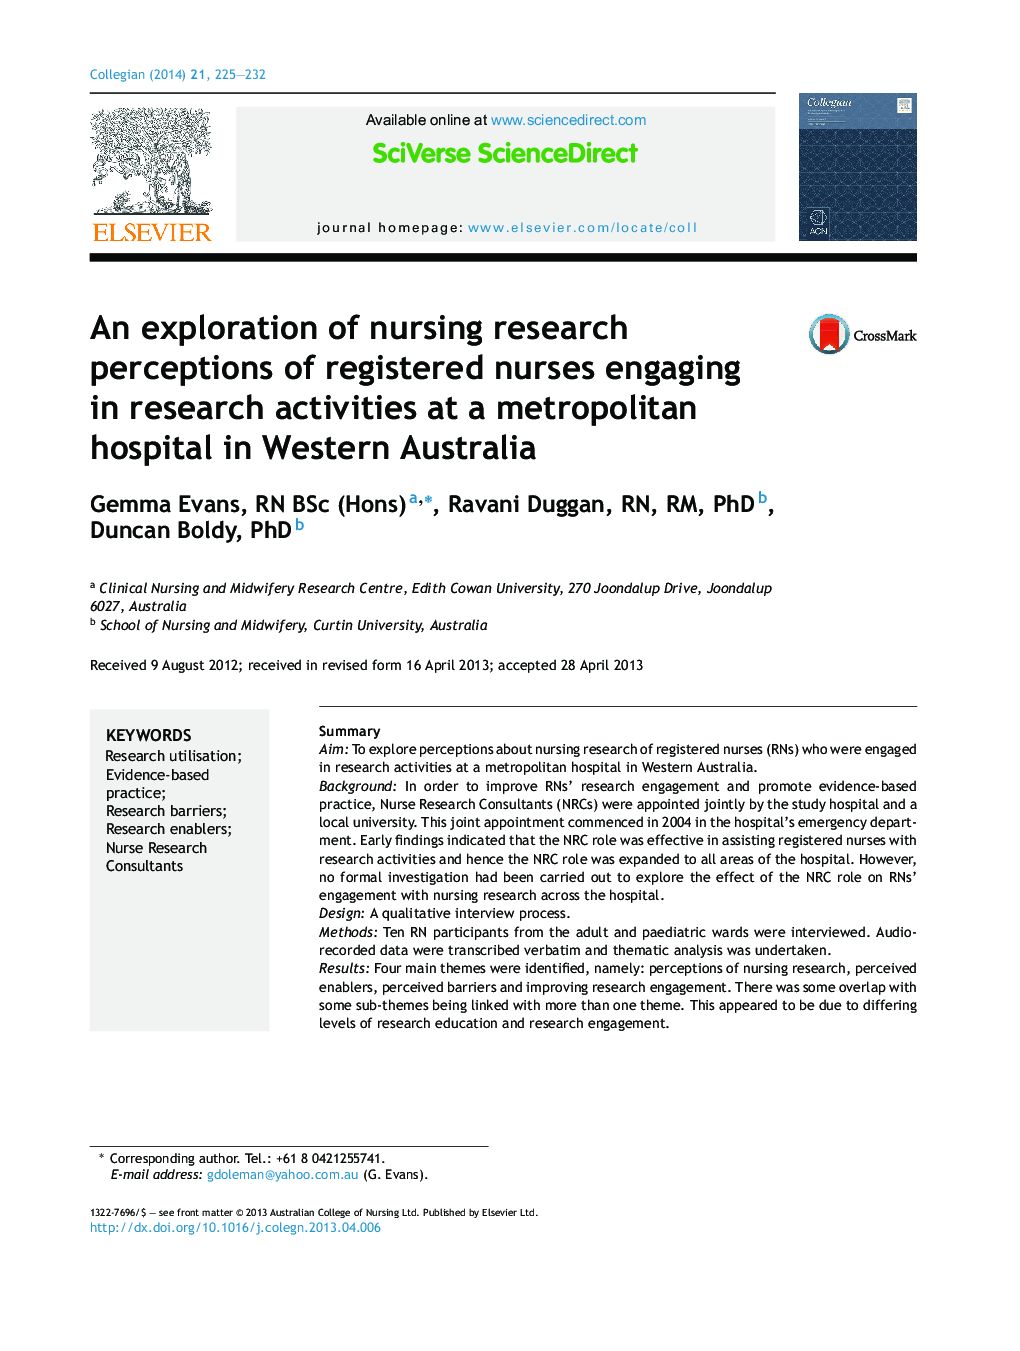 اکتشاف ادراکات تحقیق پرستاری از پرستاران ثبت شده در فعالیت های پژوهشی در یک بیمارستان شهری در غرب استرالیا